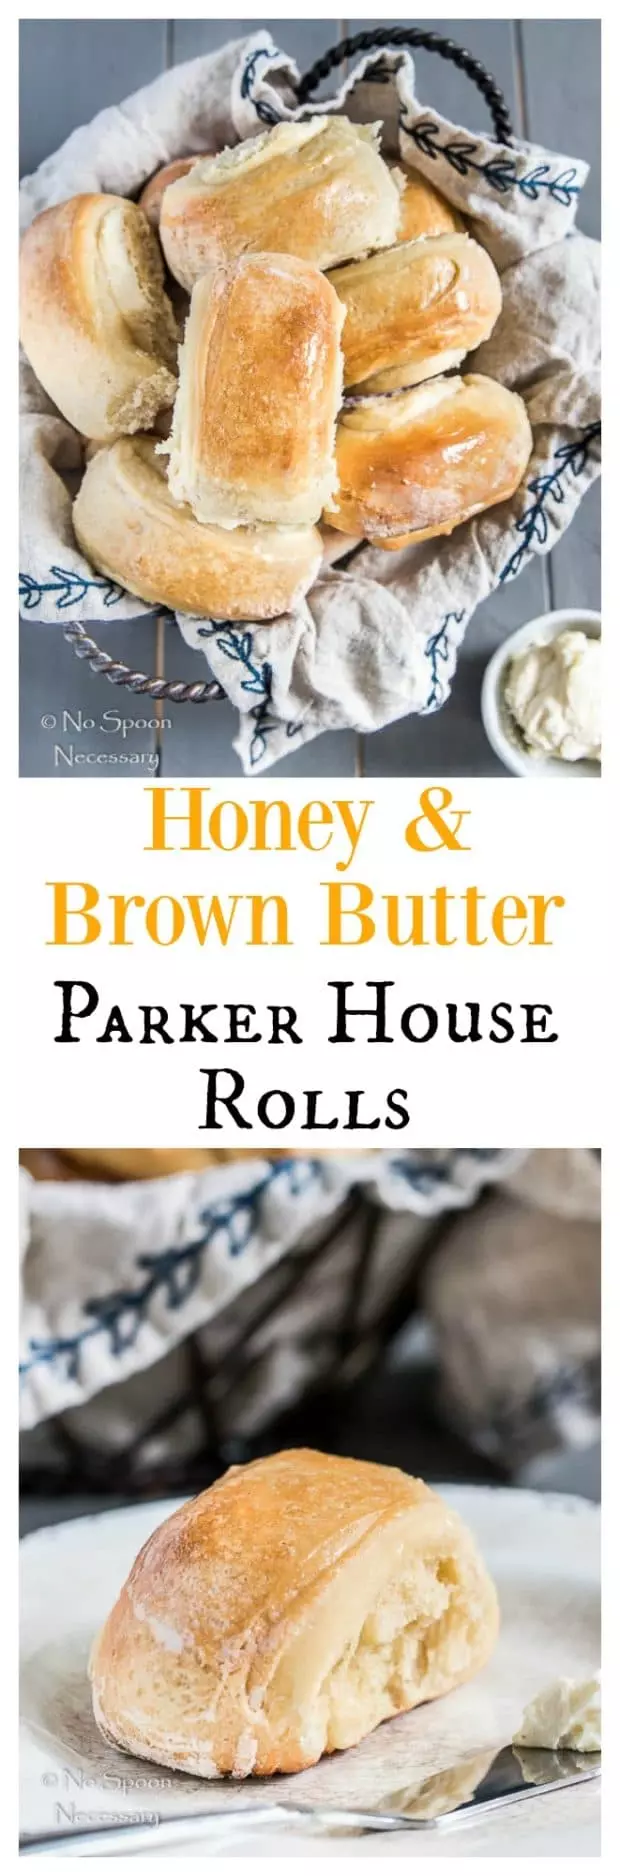 Honey Brown Butter Parker House Rolls